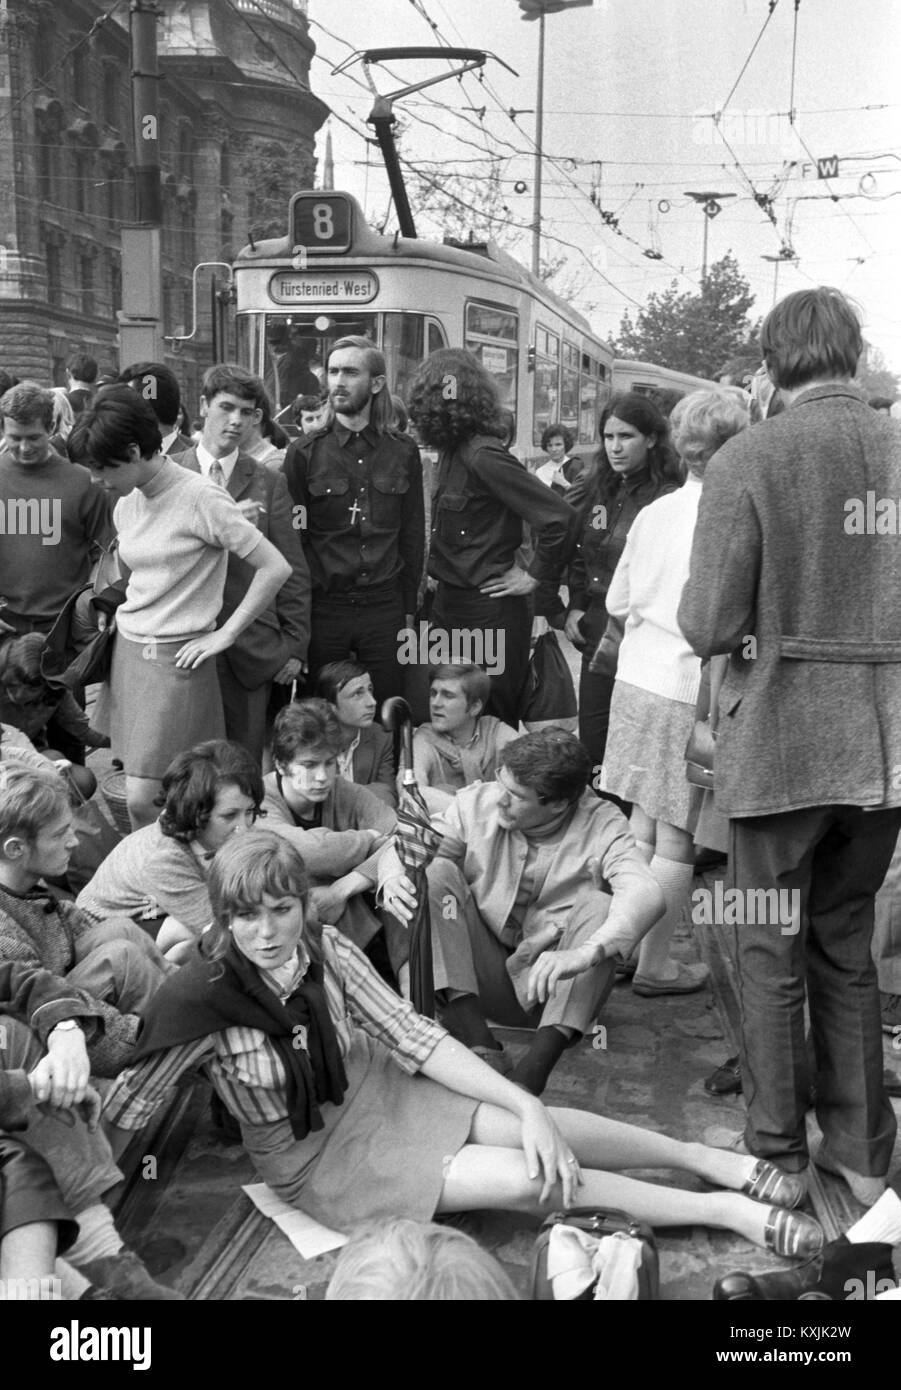 Les manifestants bloquent les lignes de tramway à Stachus à Munich. Des milliers d'étudiants, de travailleurs et d'employés ont manifesté le 29 mai 1968 contre la troisième lecture de la Loi d'urgence allemand au Bundestag. Dans le monde d'utilisation | Banque D'Images